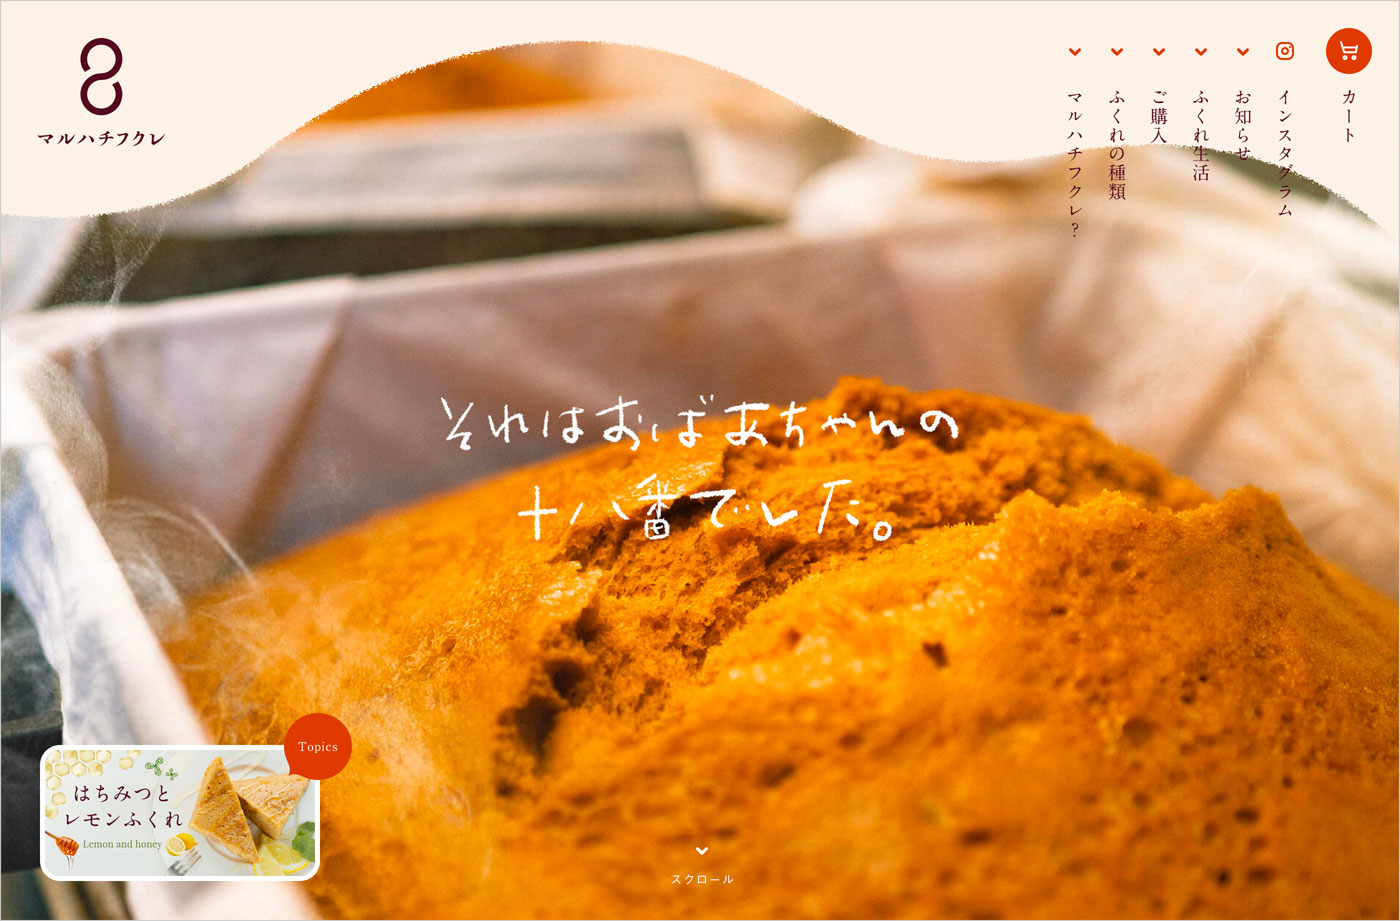 マルハチフクレ | 宮崎県都城のまるはちふくれ菓子店公式オンラインストアウェブサイトの画面キャプチャ画像